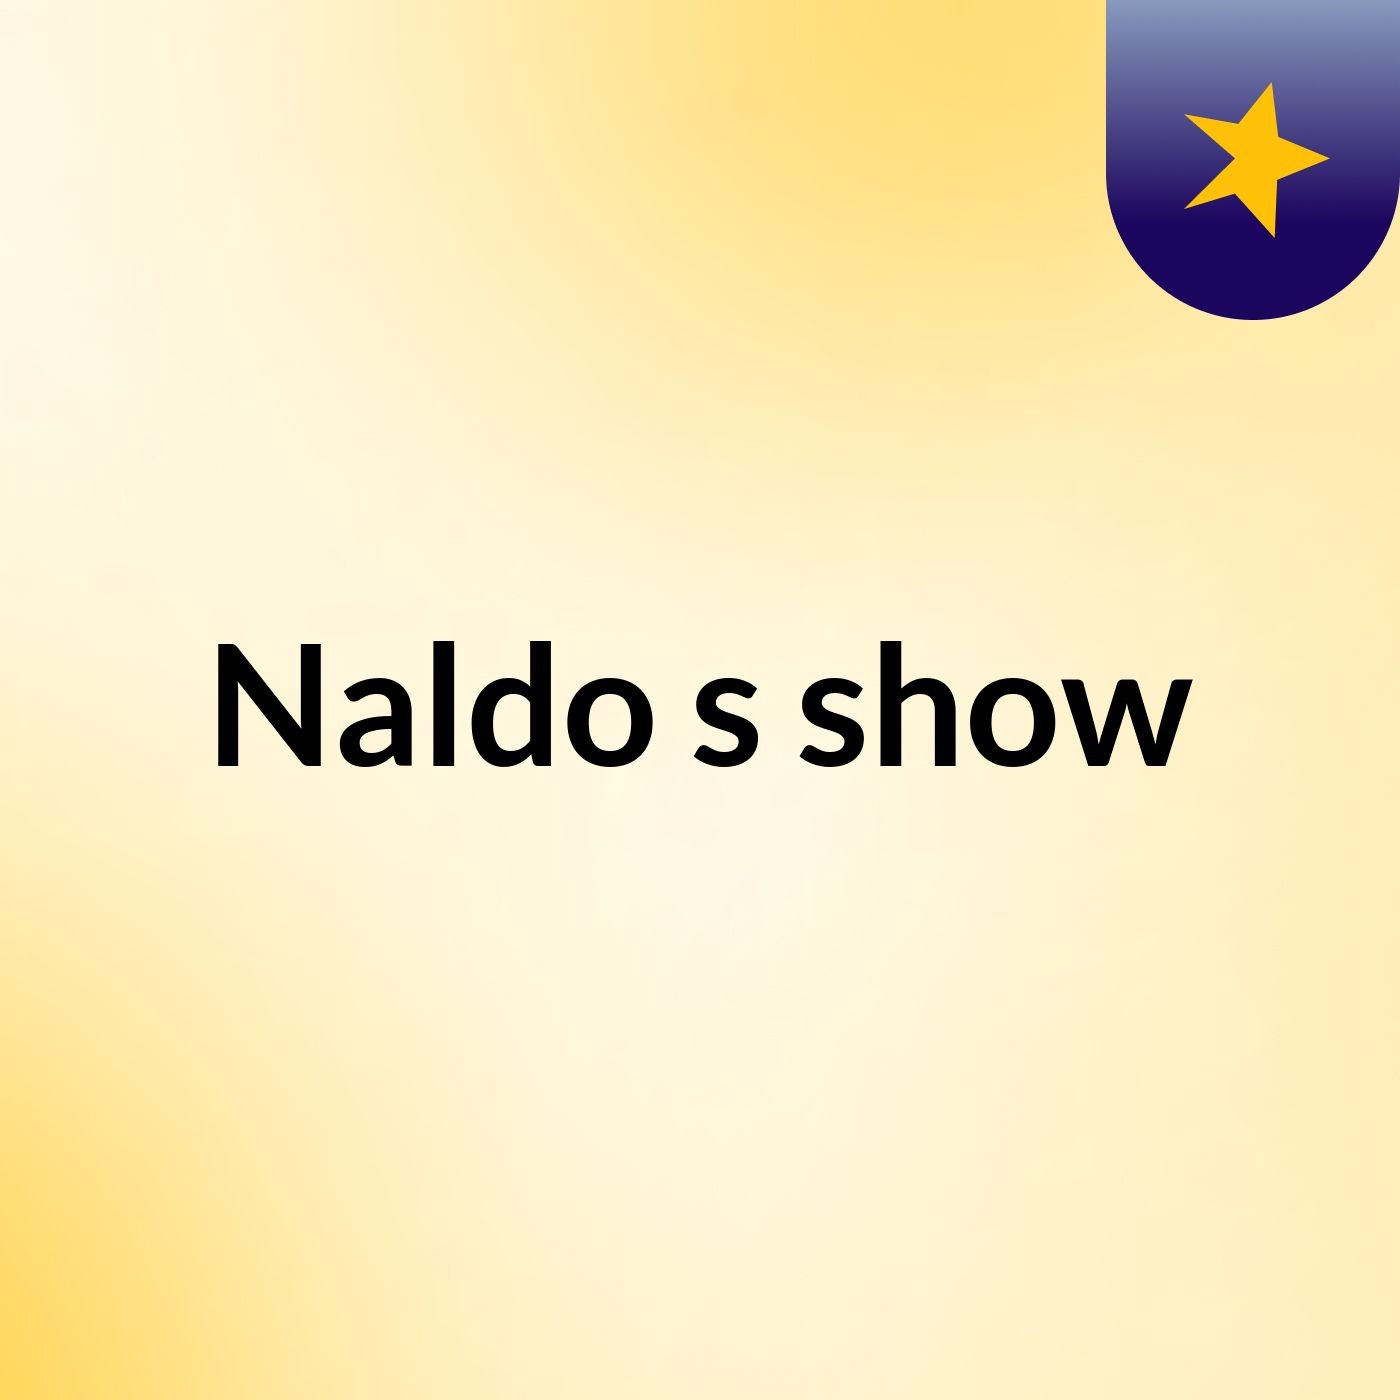 Naldo's show